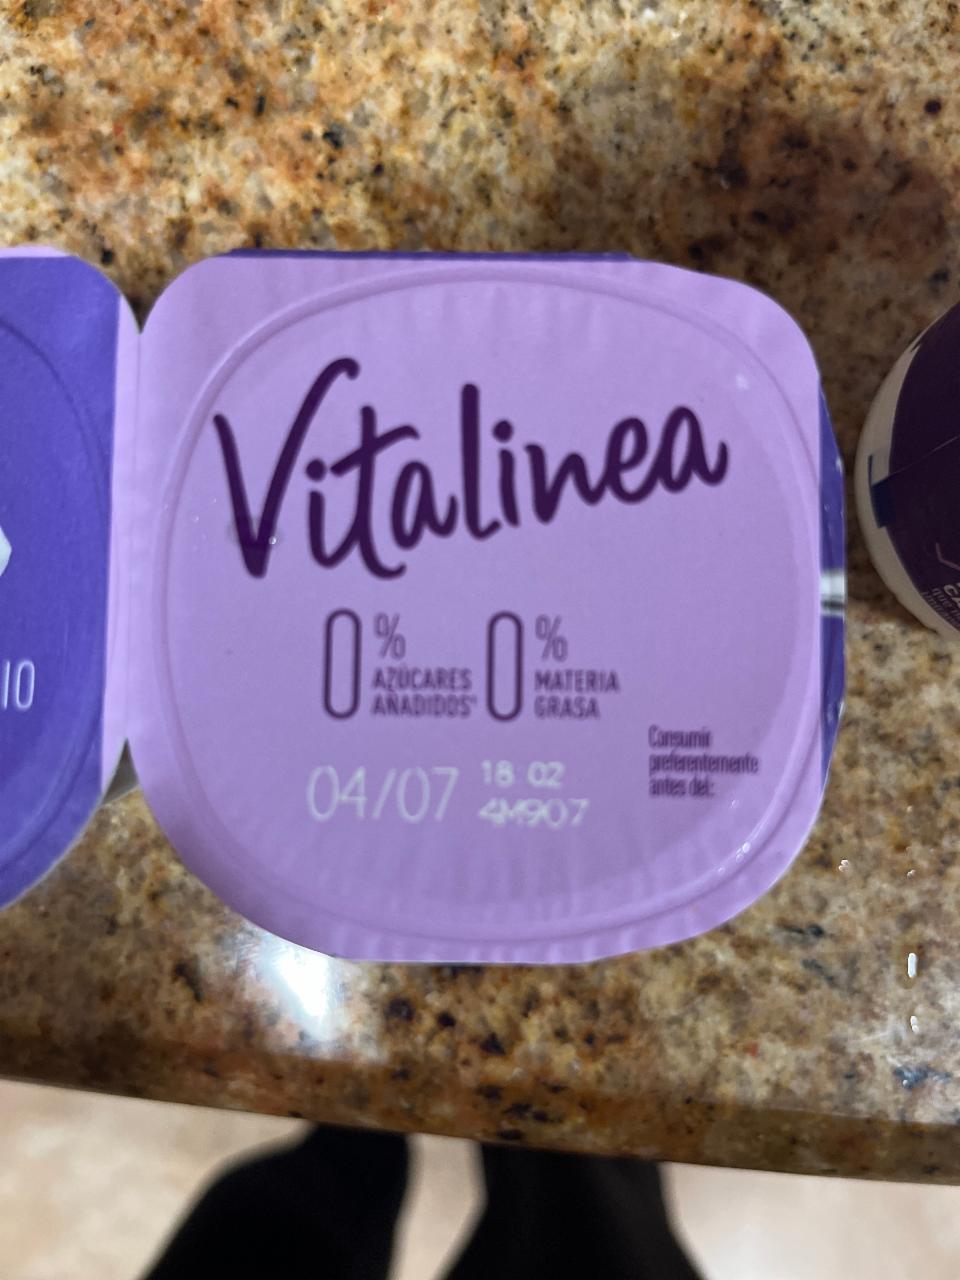 Фото - йогурт обезжиренный Vitalinea Danone